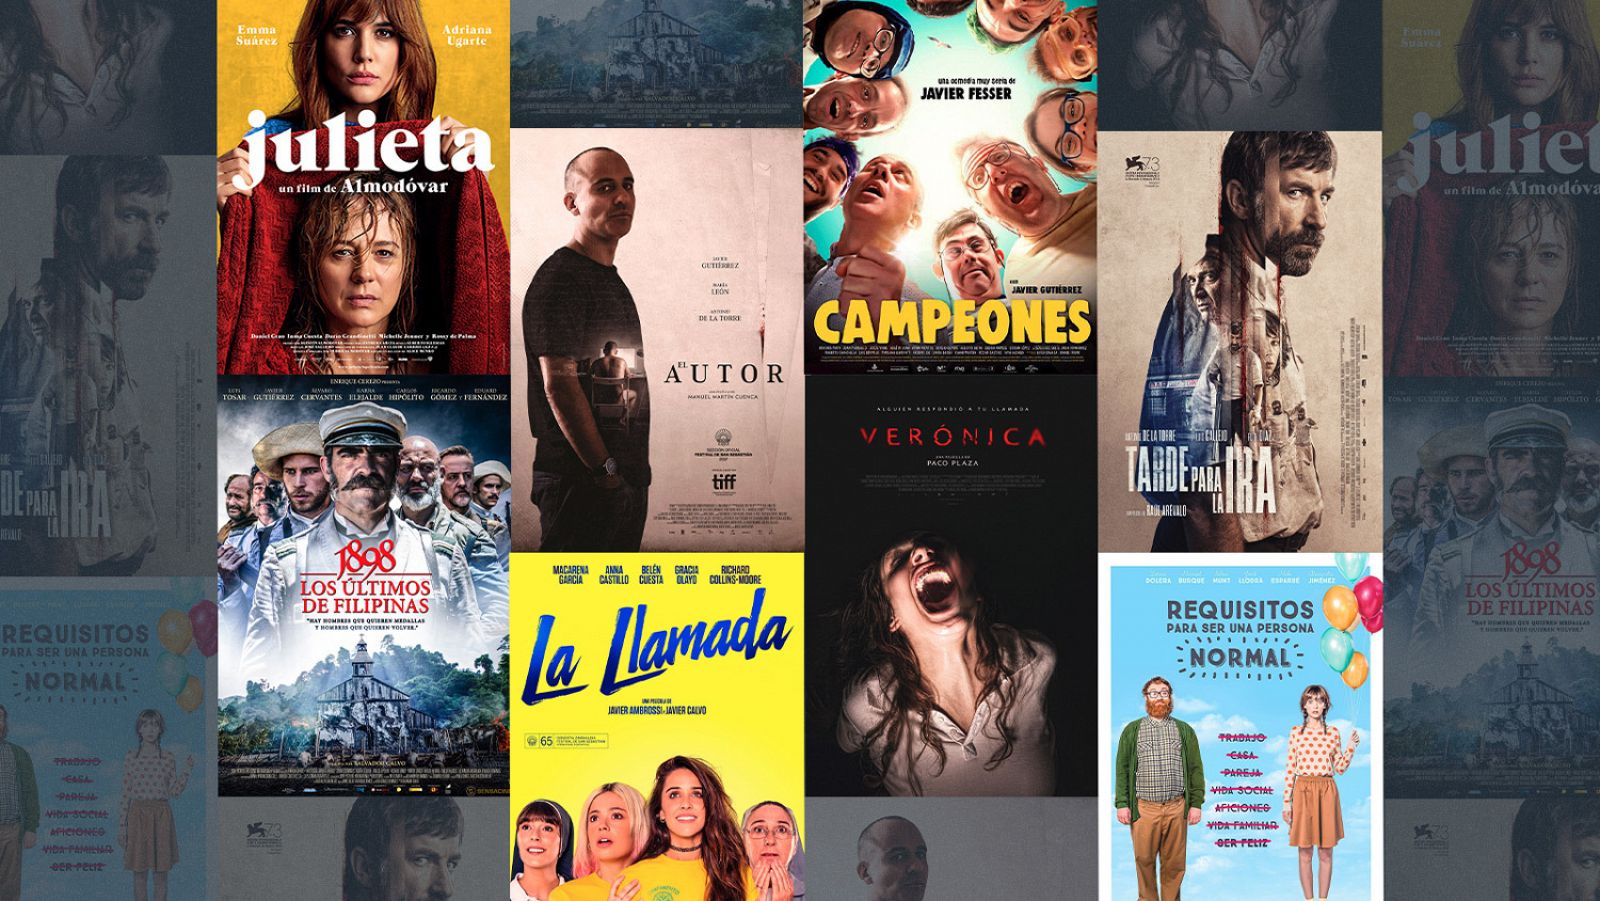 Somos cine - La llamada: Cine español online, en Somos Cine